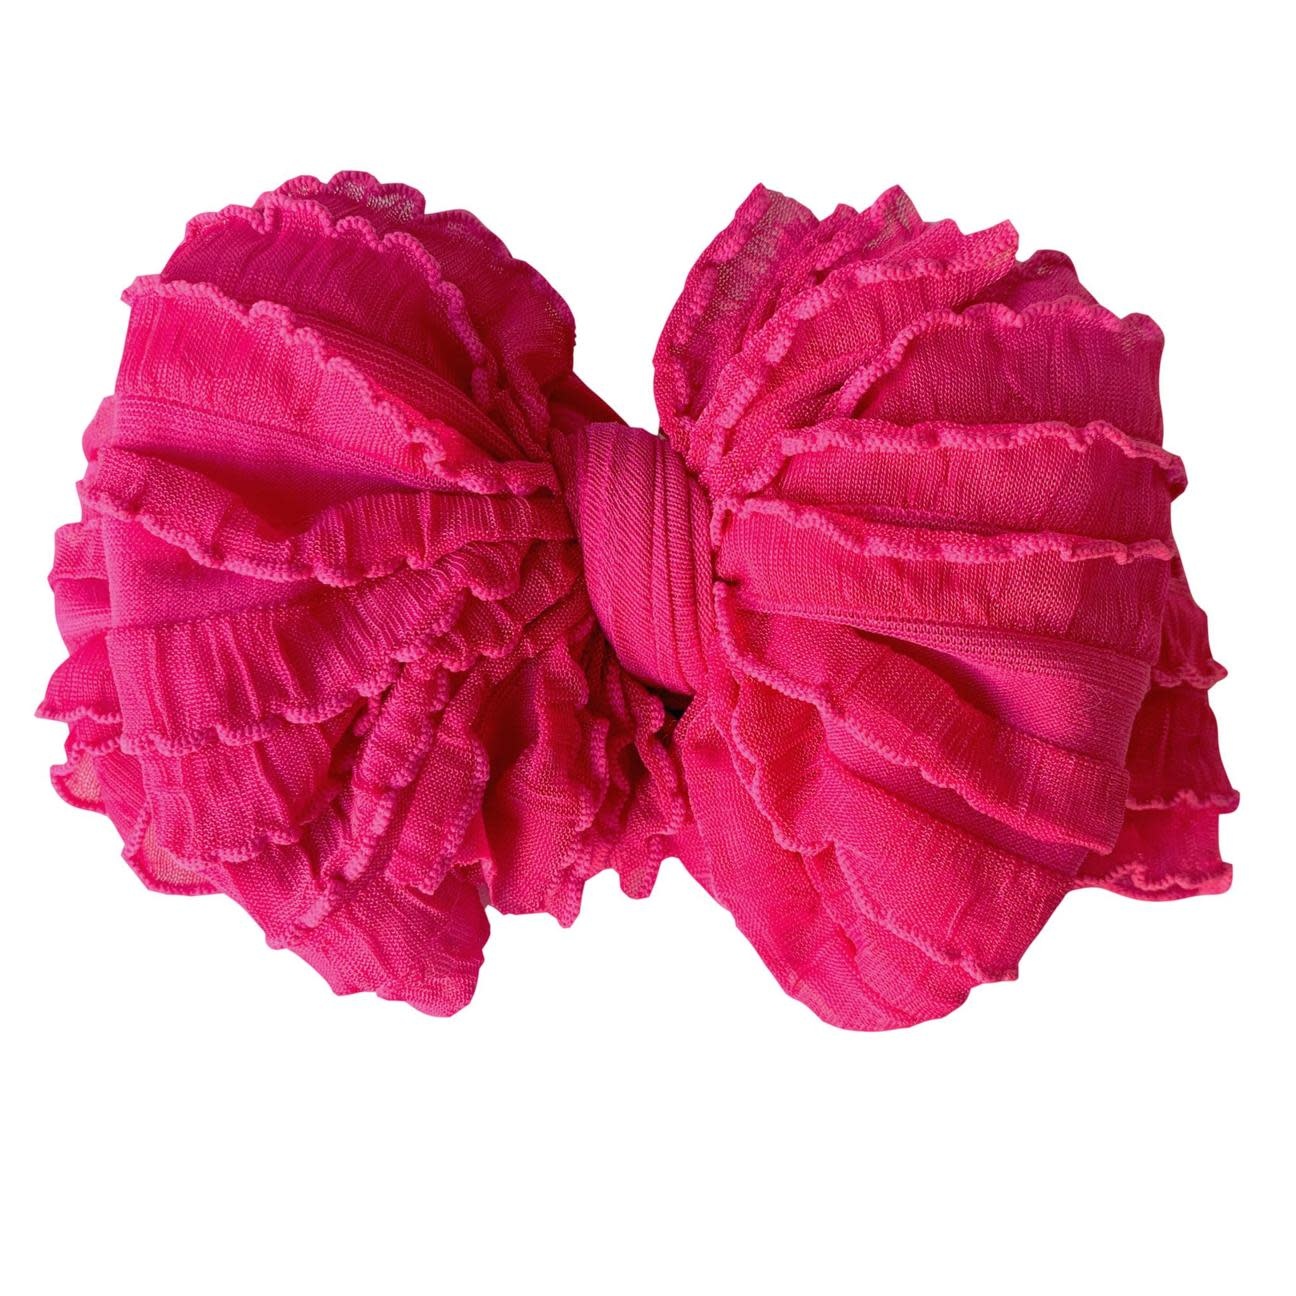 In Awe Couture Ruffle Headband Wild Pink Mini Ruffles